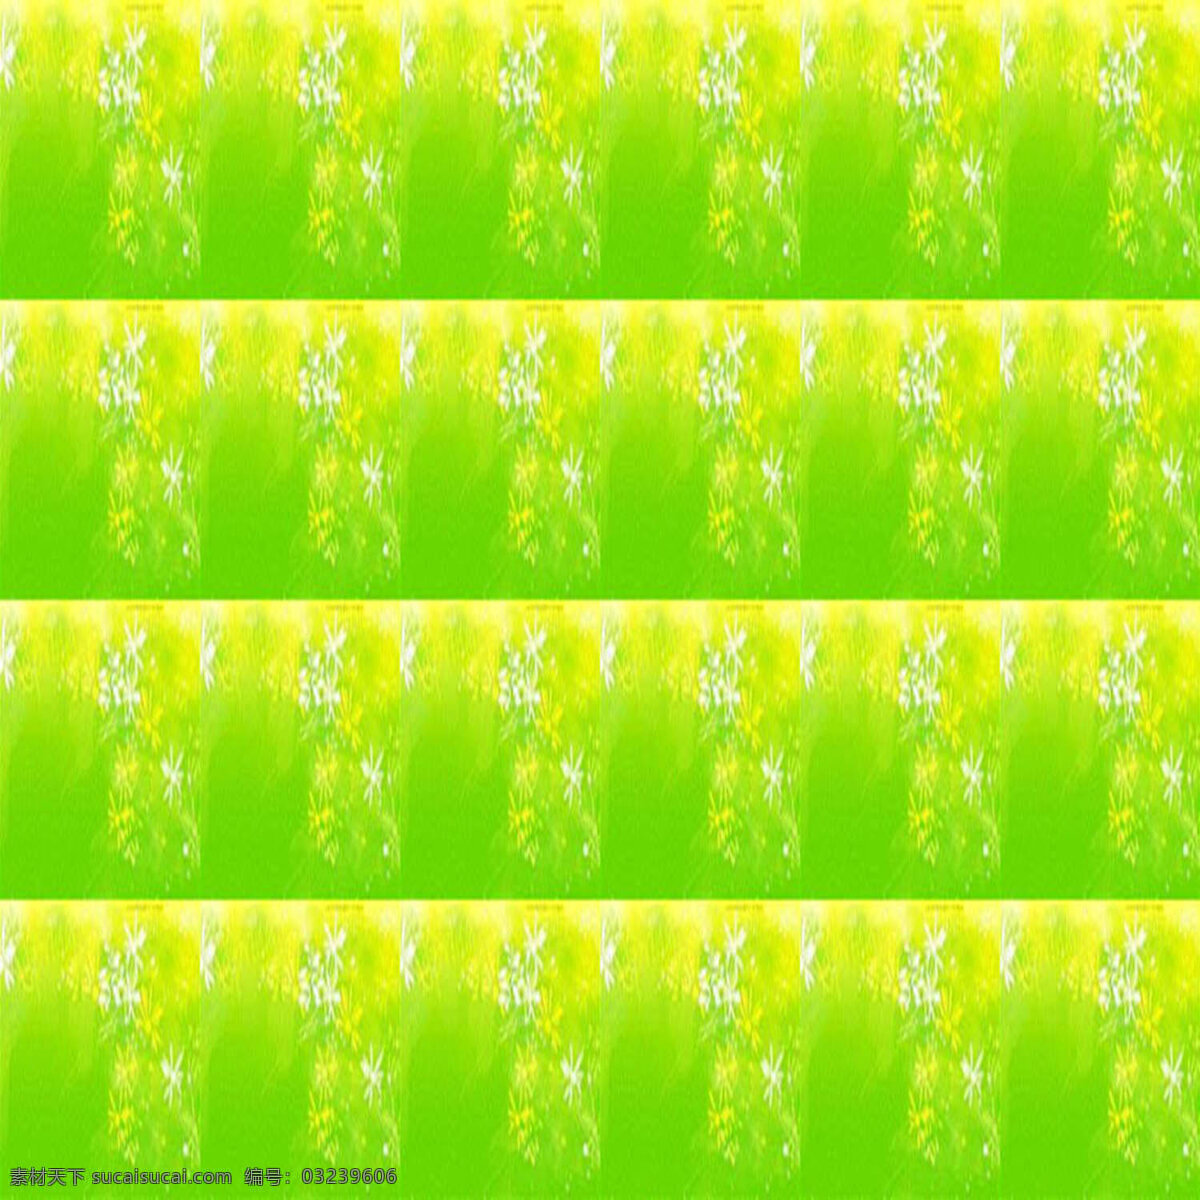 黄绿 背景 背景素材 分隔线条素材 简约 线条 线条画素材 模糊 效果 ios7 背景图片